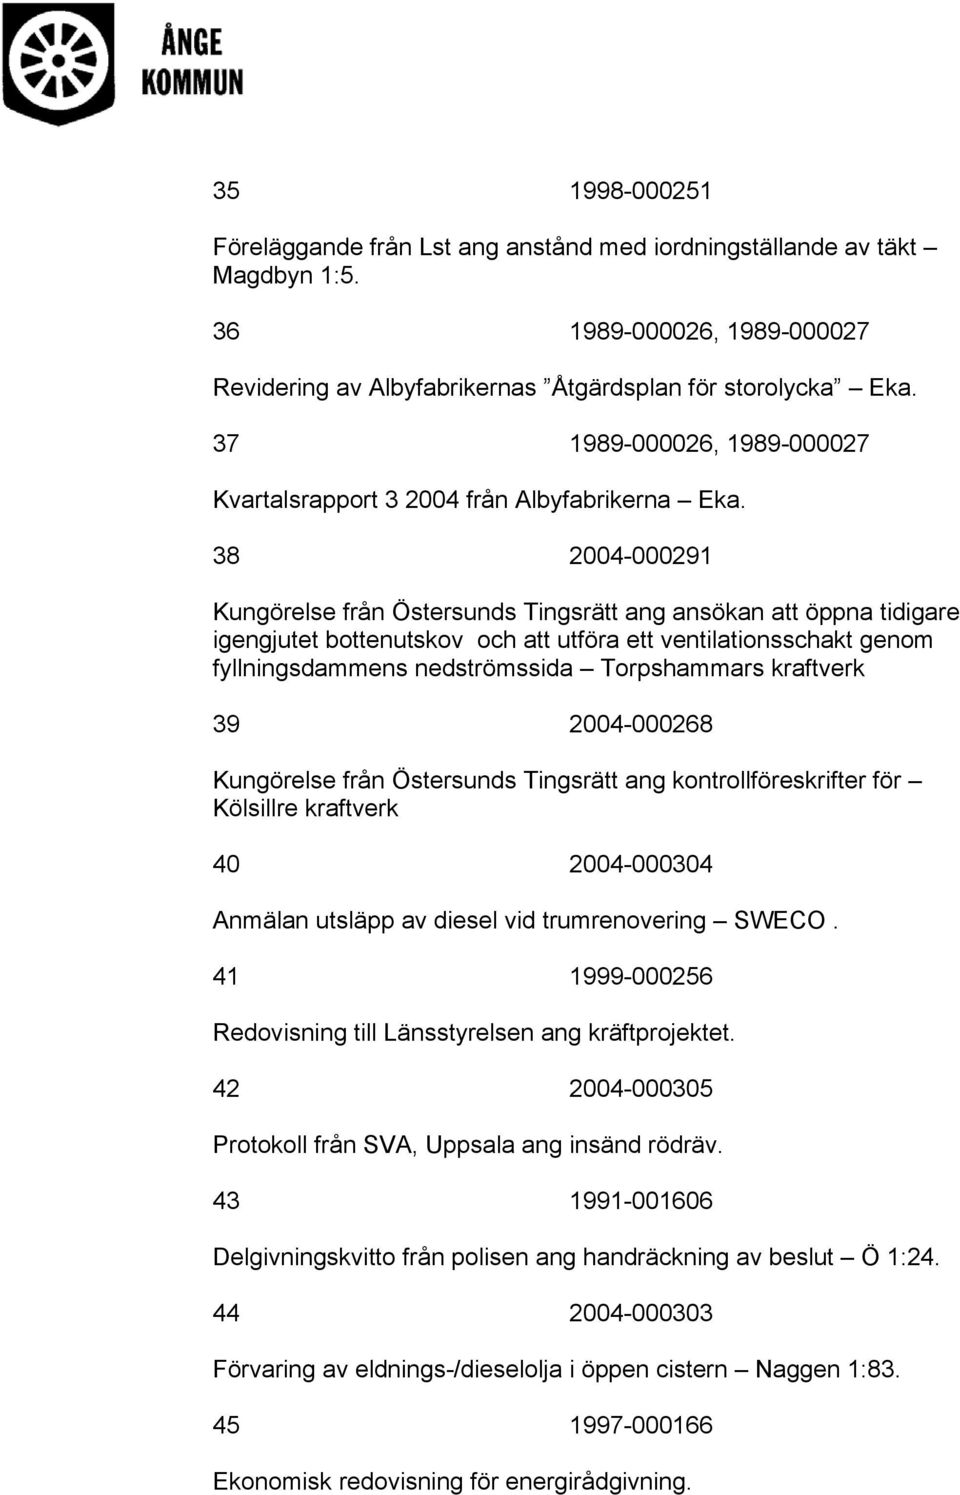 38 2004-000291 Kungörelse från Östersunds Tingsrätt ang ansökan att öppna tidigare igengjutet bottenutskov och att utföra ett ventilationsschakt genom fyllningsdammens nedströmssida Torpshammars